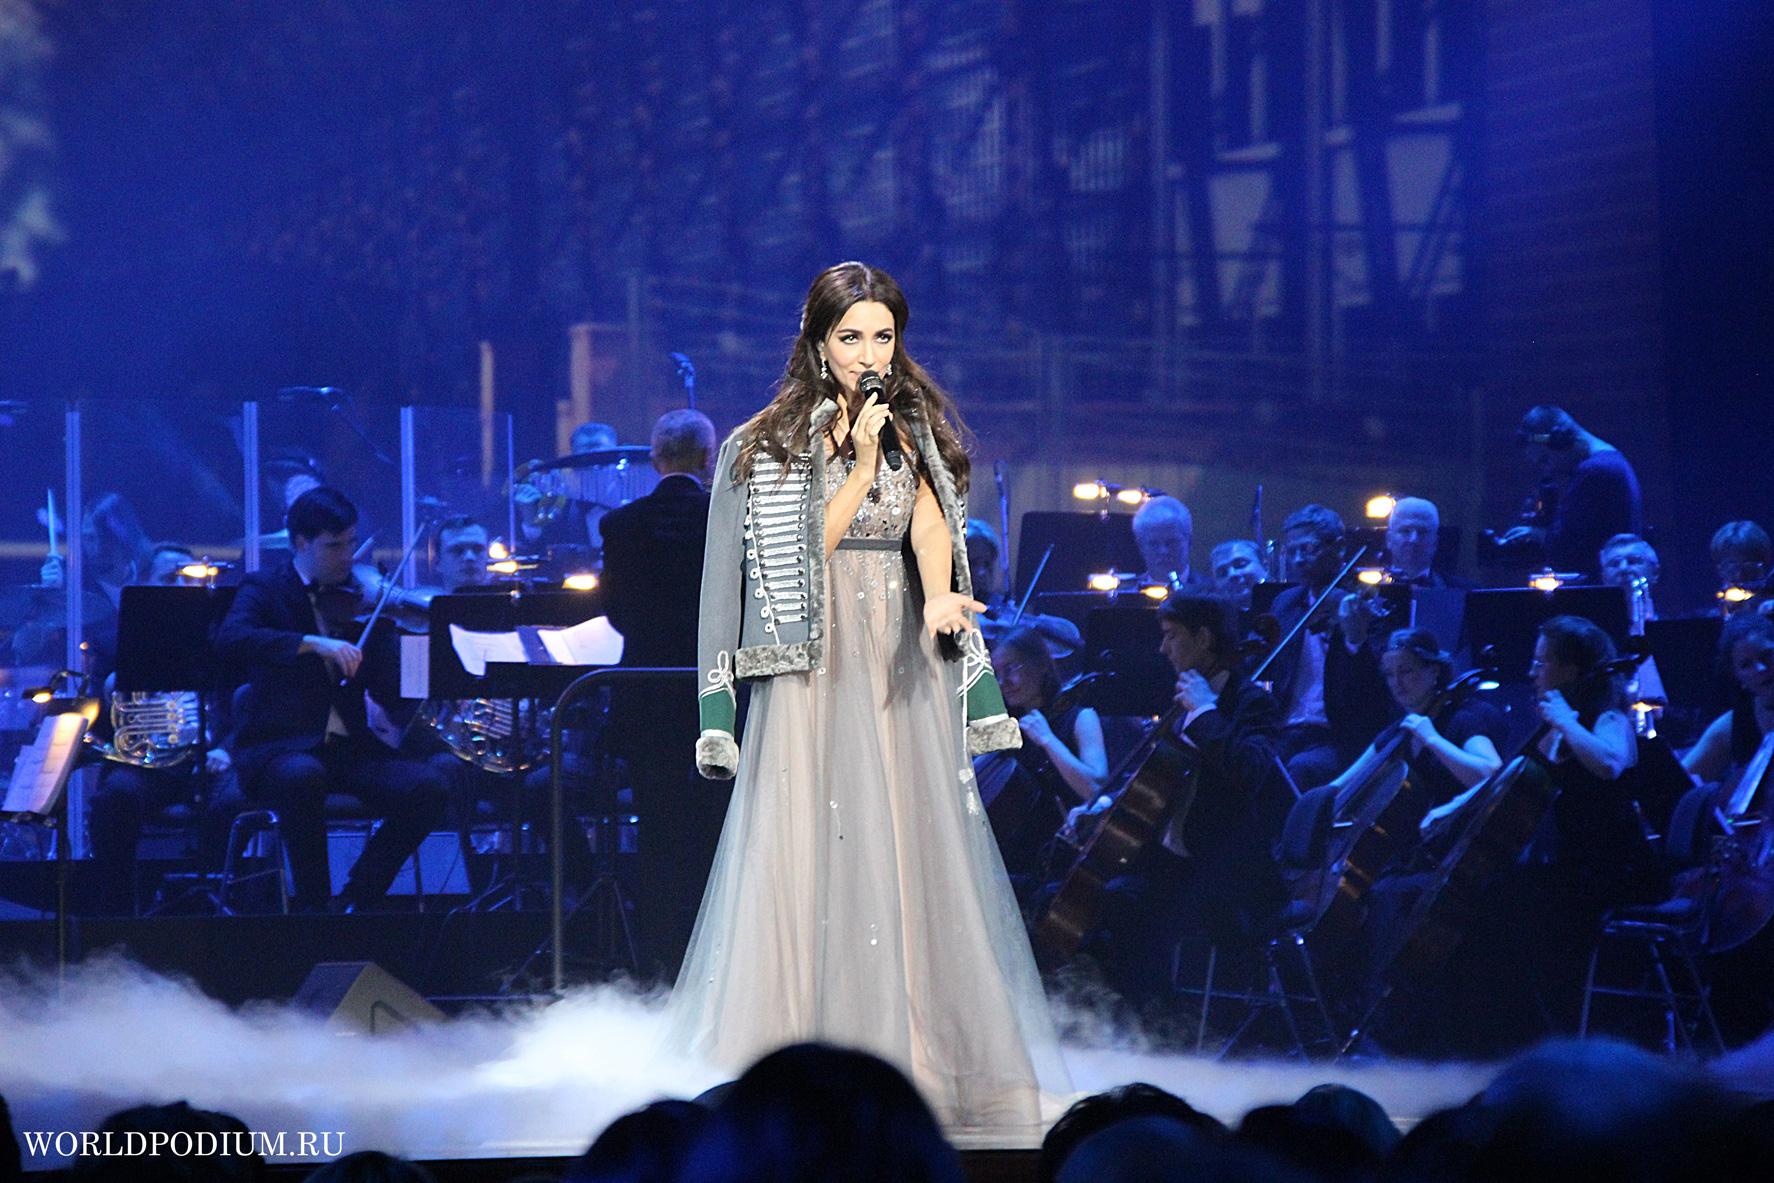 «Пусть голос мой звездою светит!», - вдохновенный сольный концерт Зары на главной сцене страны!